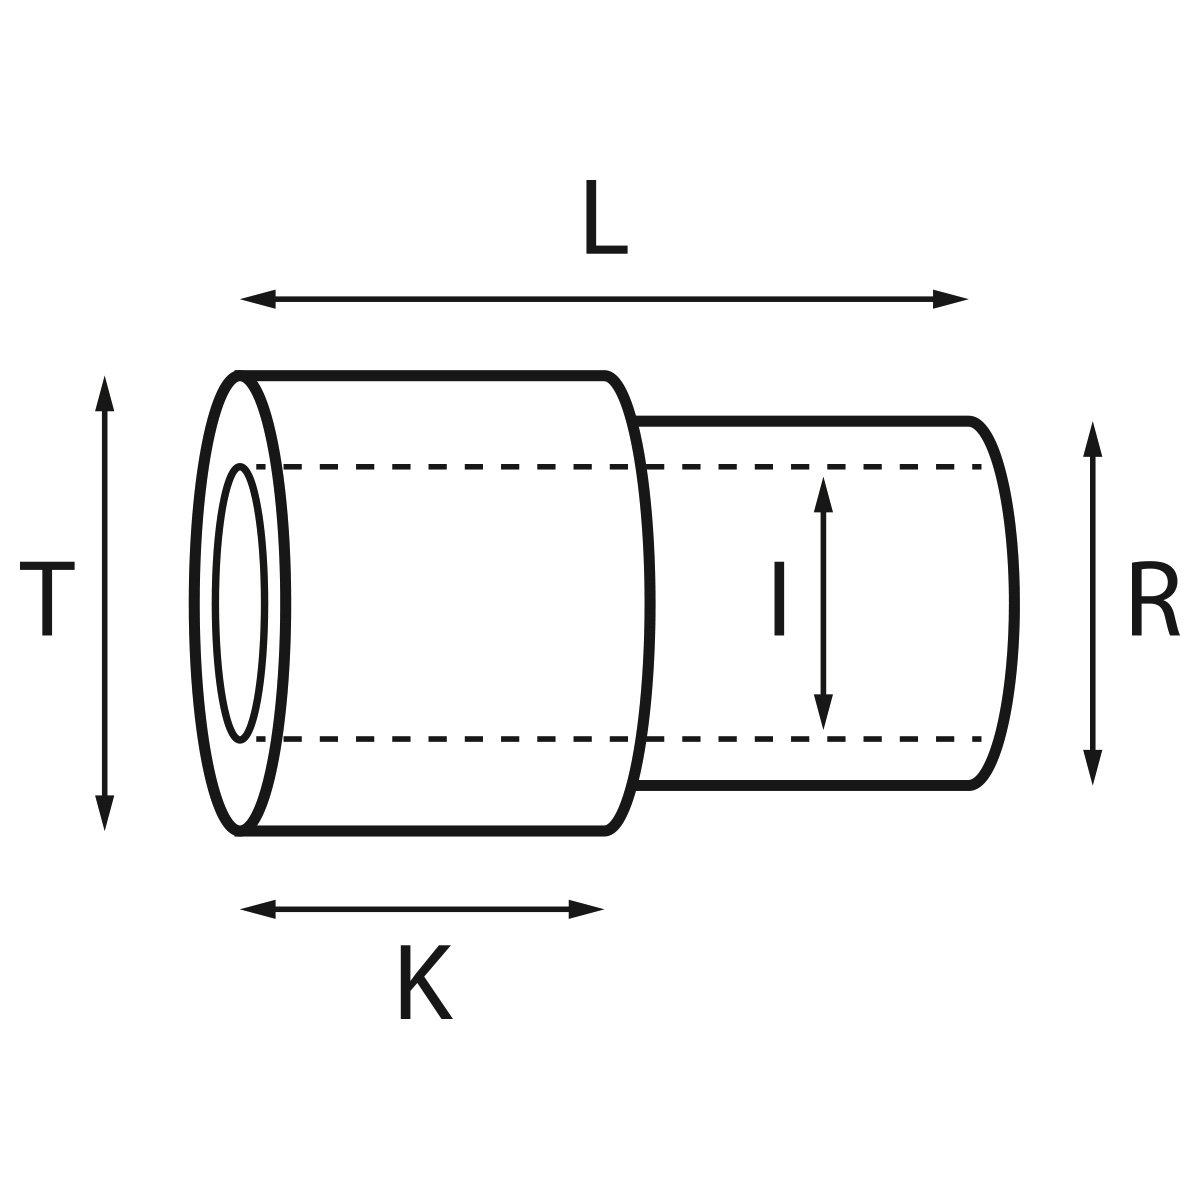 Gehäusetube Typ AS 13826, Tubus Ø 2 mm, Gesamtlänge 4,5 mm, für wasserdichte Kronen